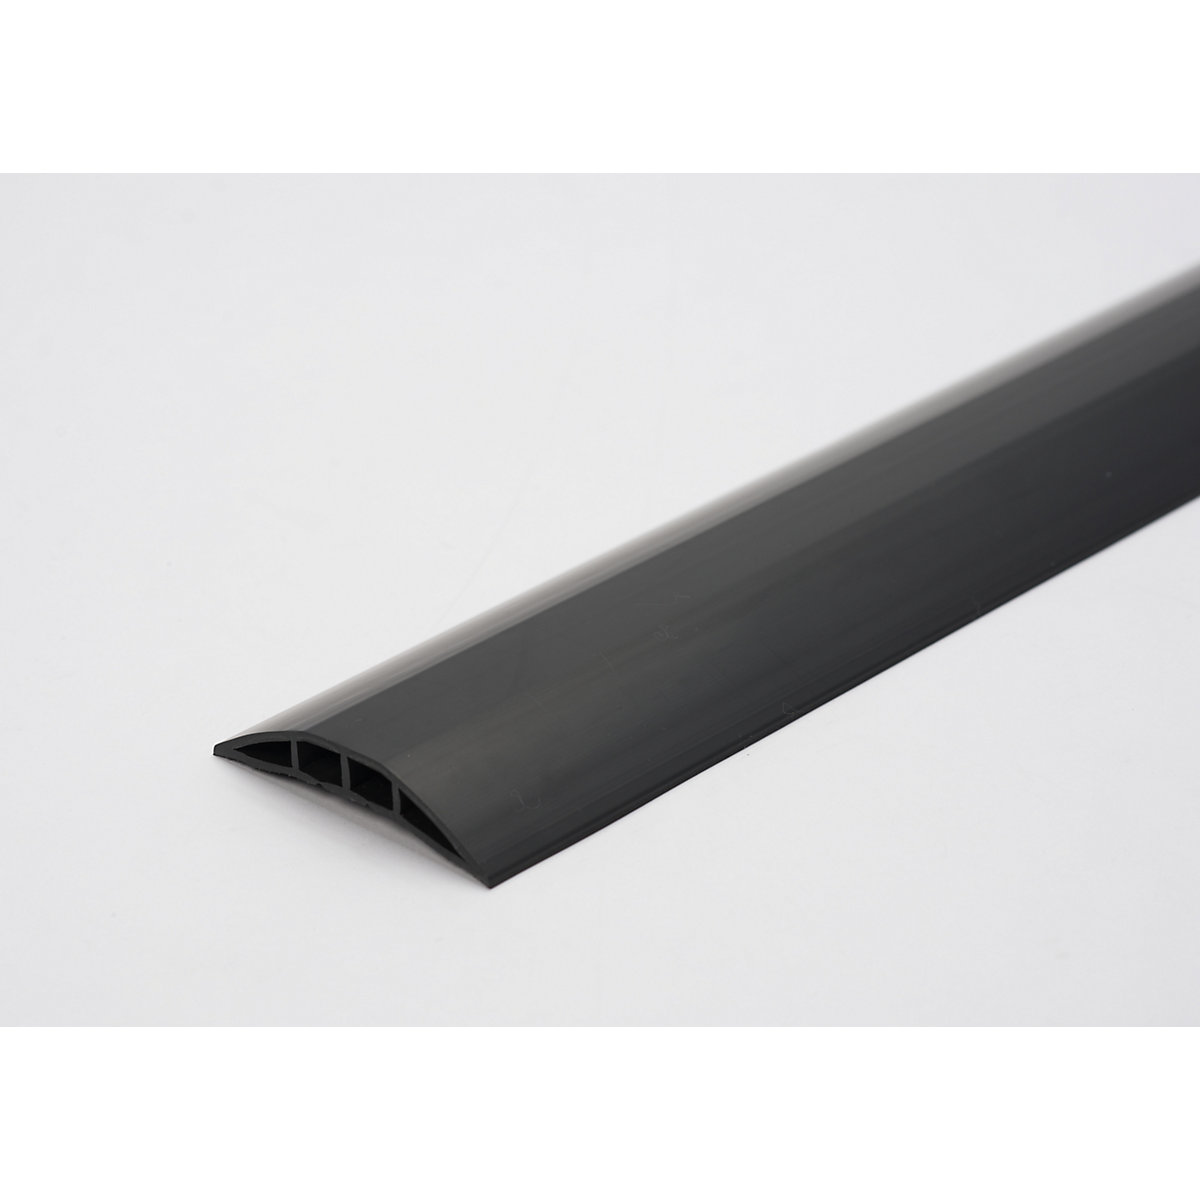 Műanyag kábelvezető padlóhíd, max. 7,5 mm Ø-jű kábelekhez és tömlőkhöz, fekete színben, 2 kamrával, hossz 1,5 m-4